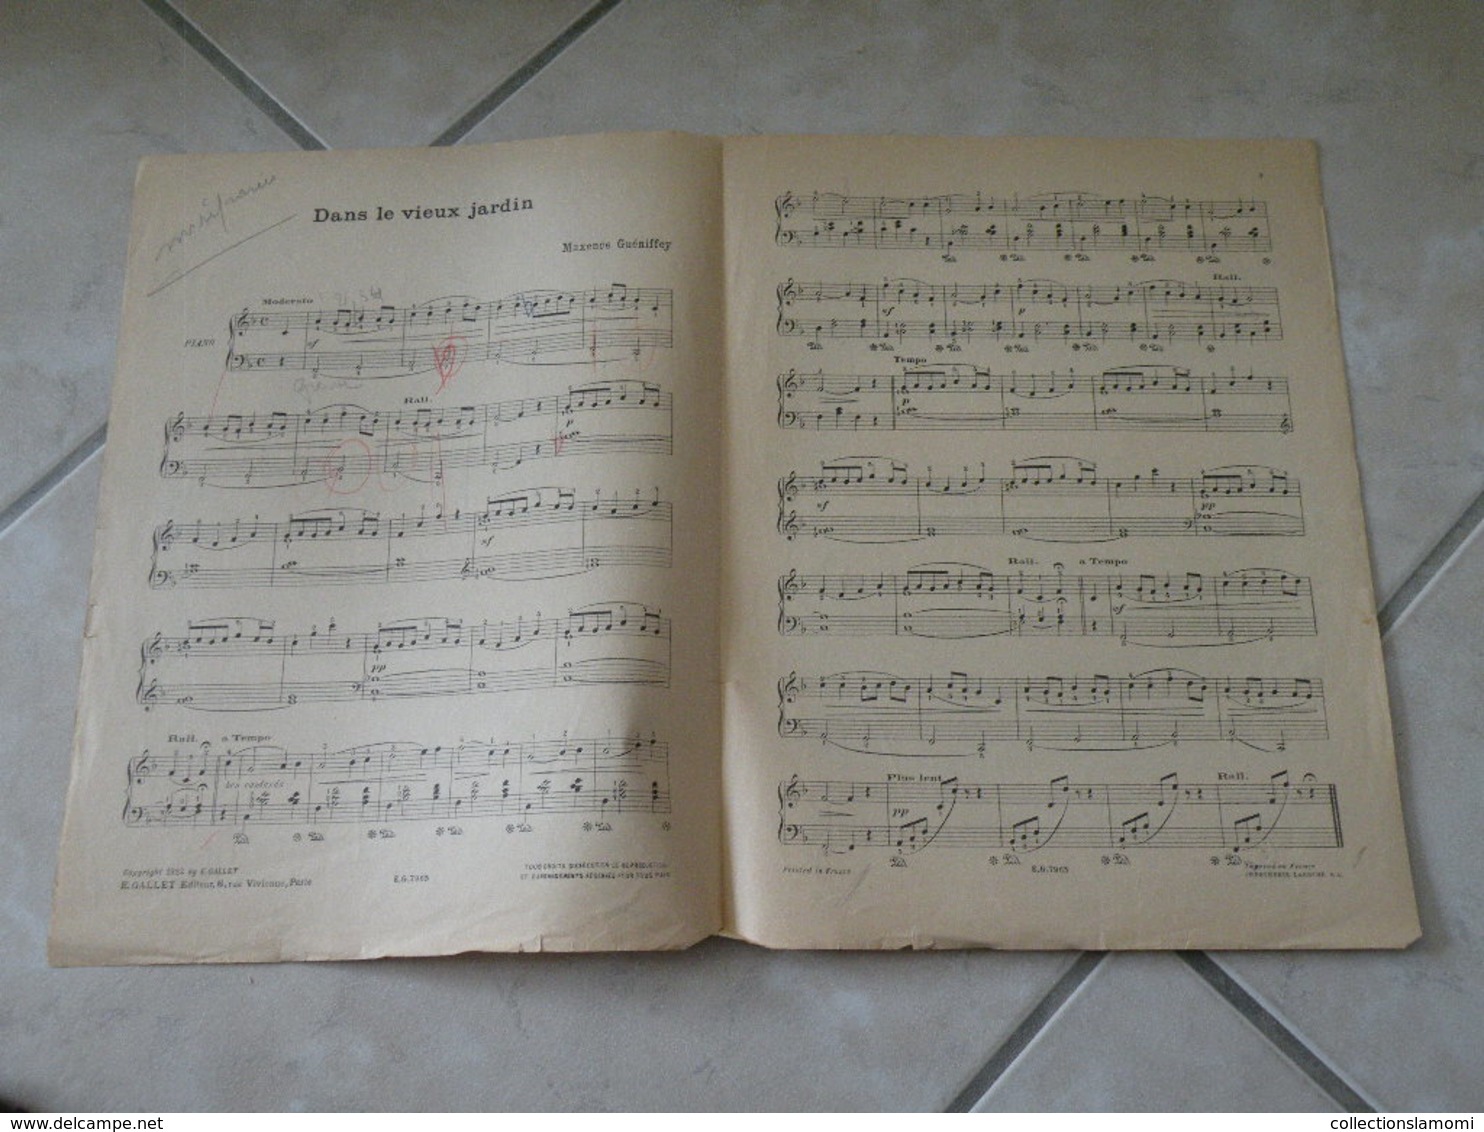 Dans Le Vieux Jardin & Trotte Petit ânon -(Musique Maxence Guéniffey)- Partition (Piano) 1922 - Klavierinstrumenten